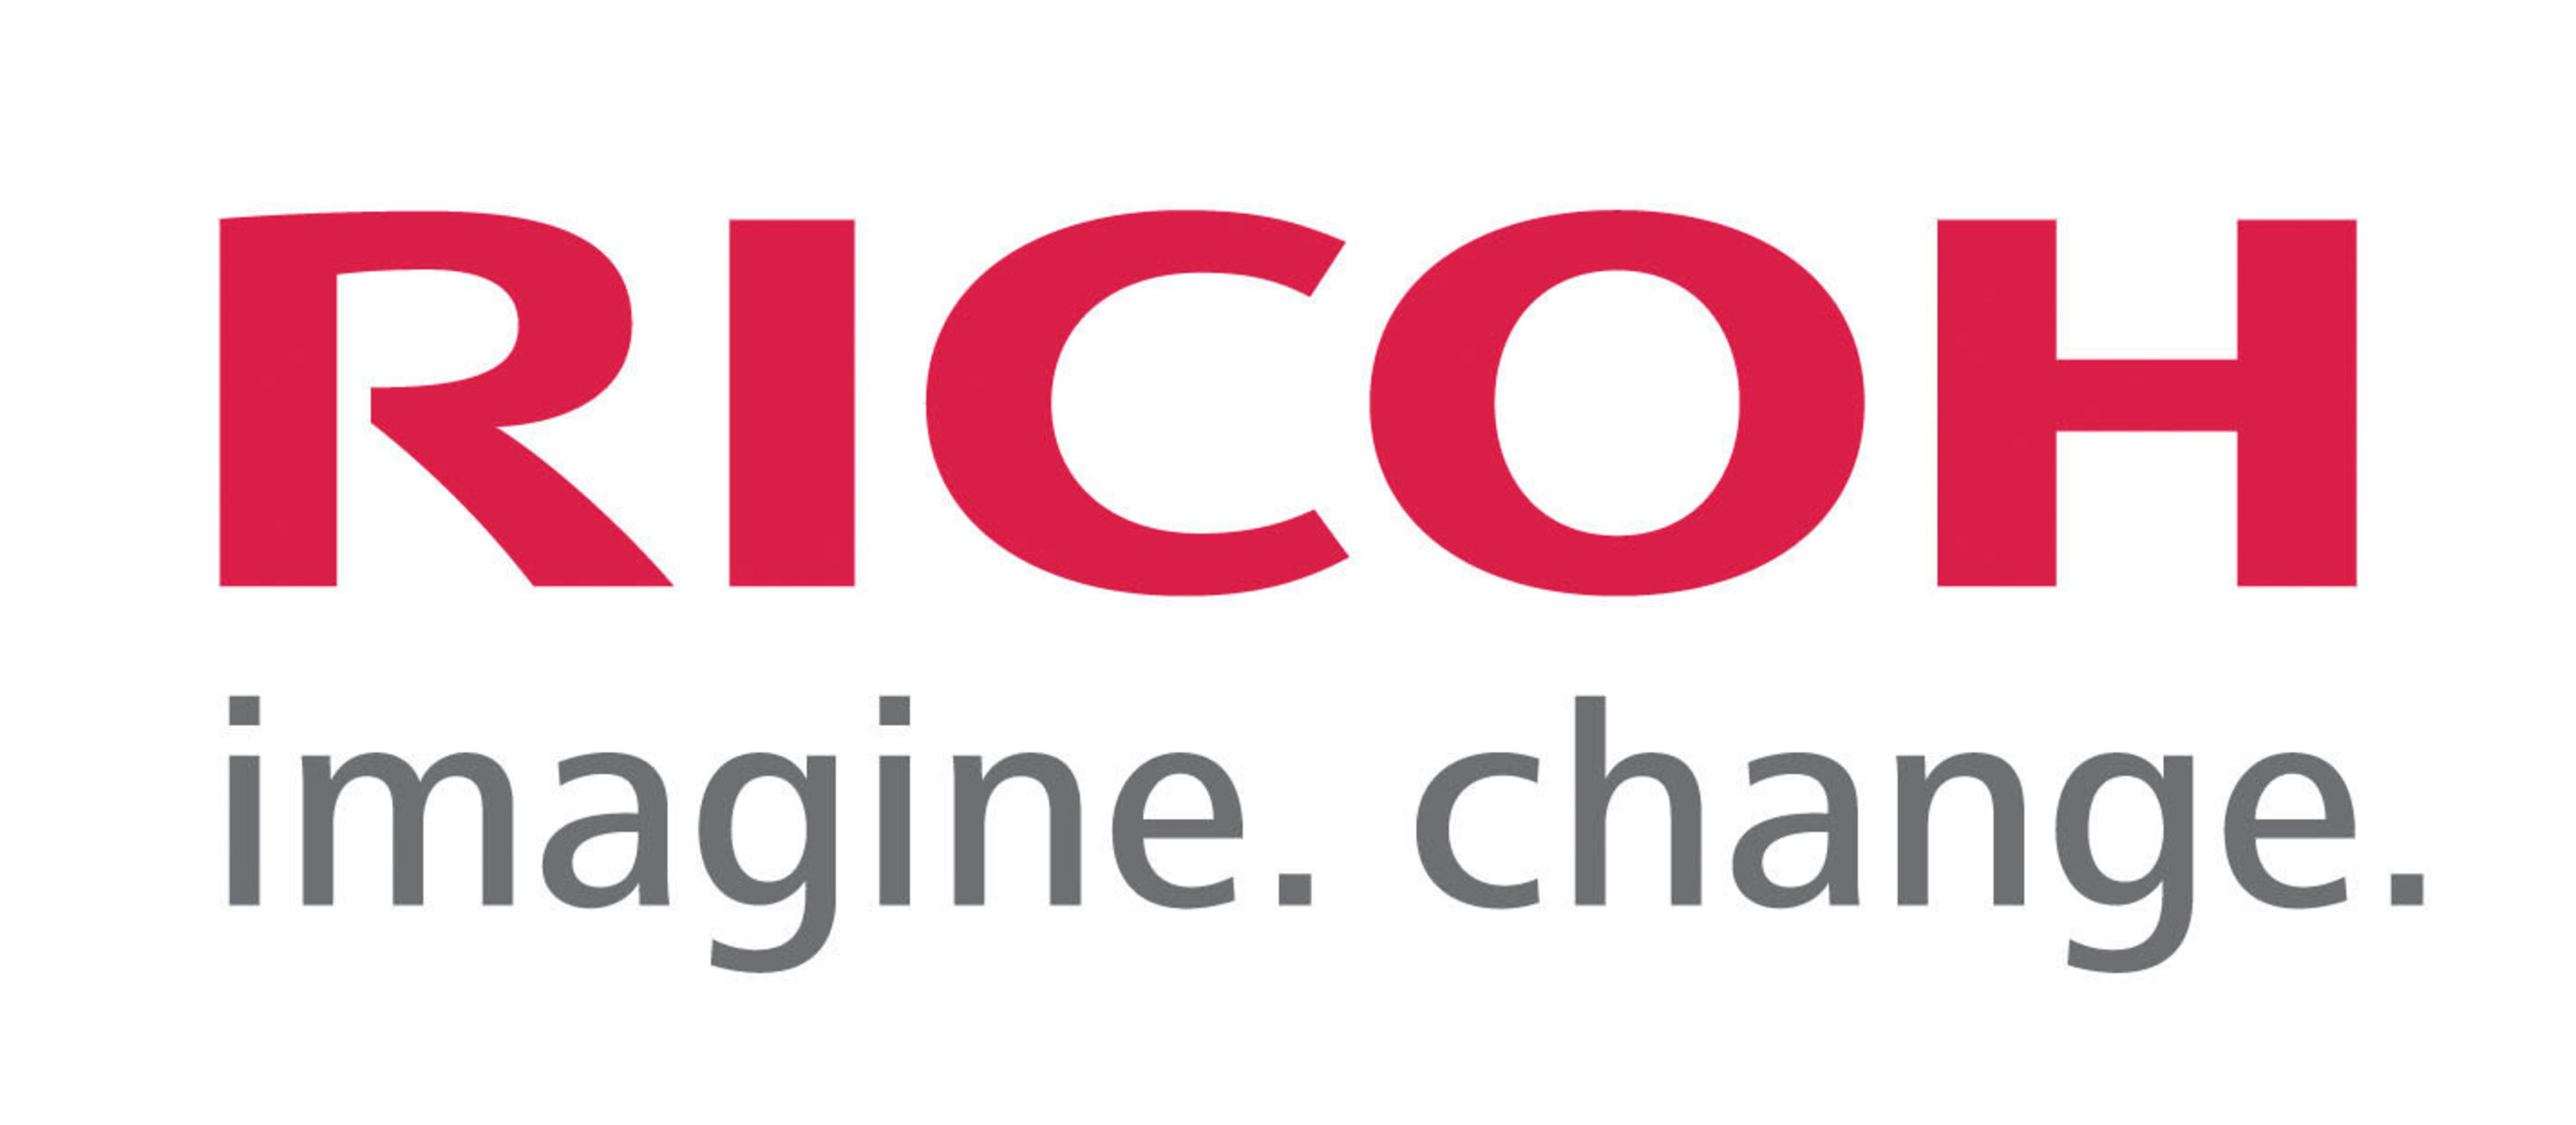 Ricoh USA, Inc. logo. (PRNewsFoto/Ricoh USA, Inc.) (PRNewsFoto/Ricoh USA, Inc.)